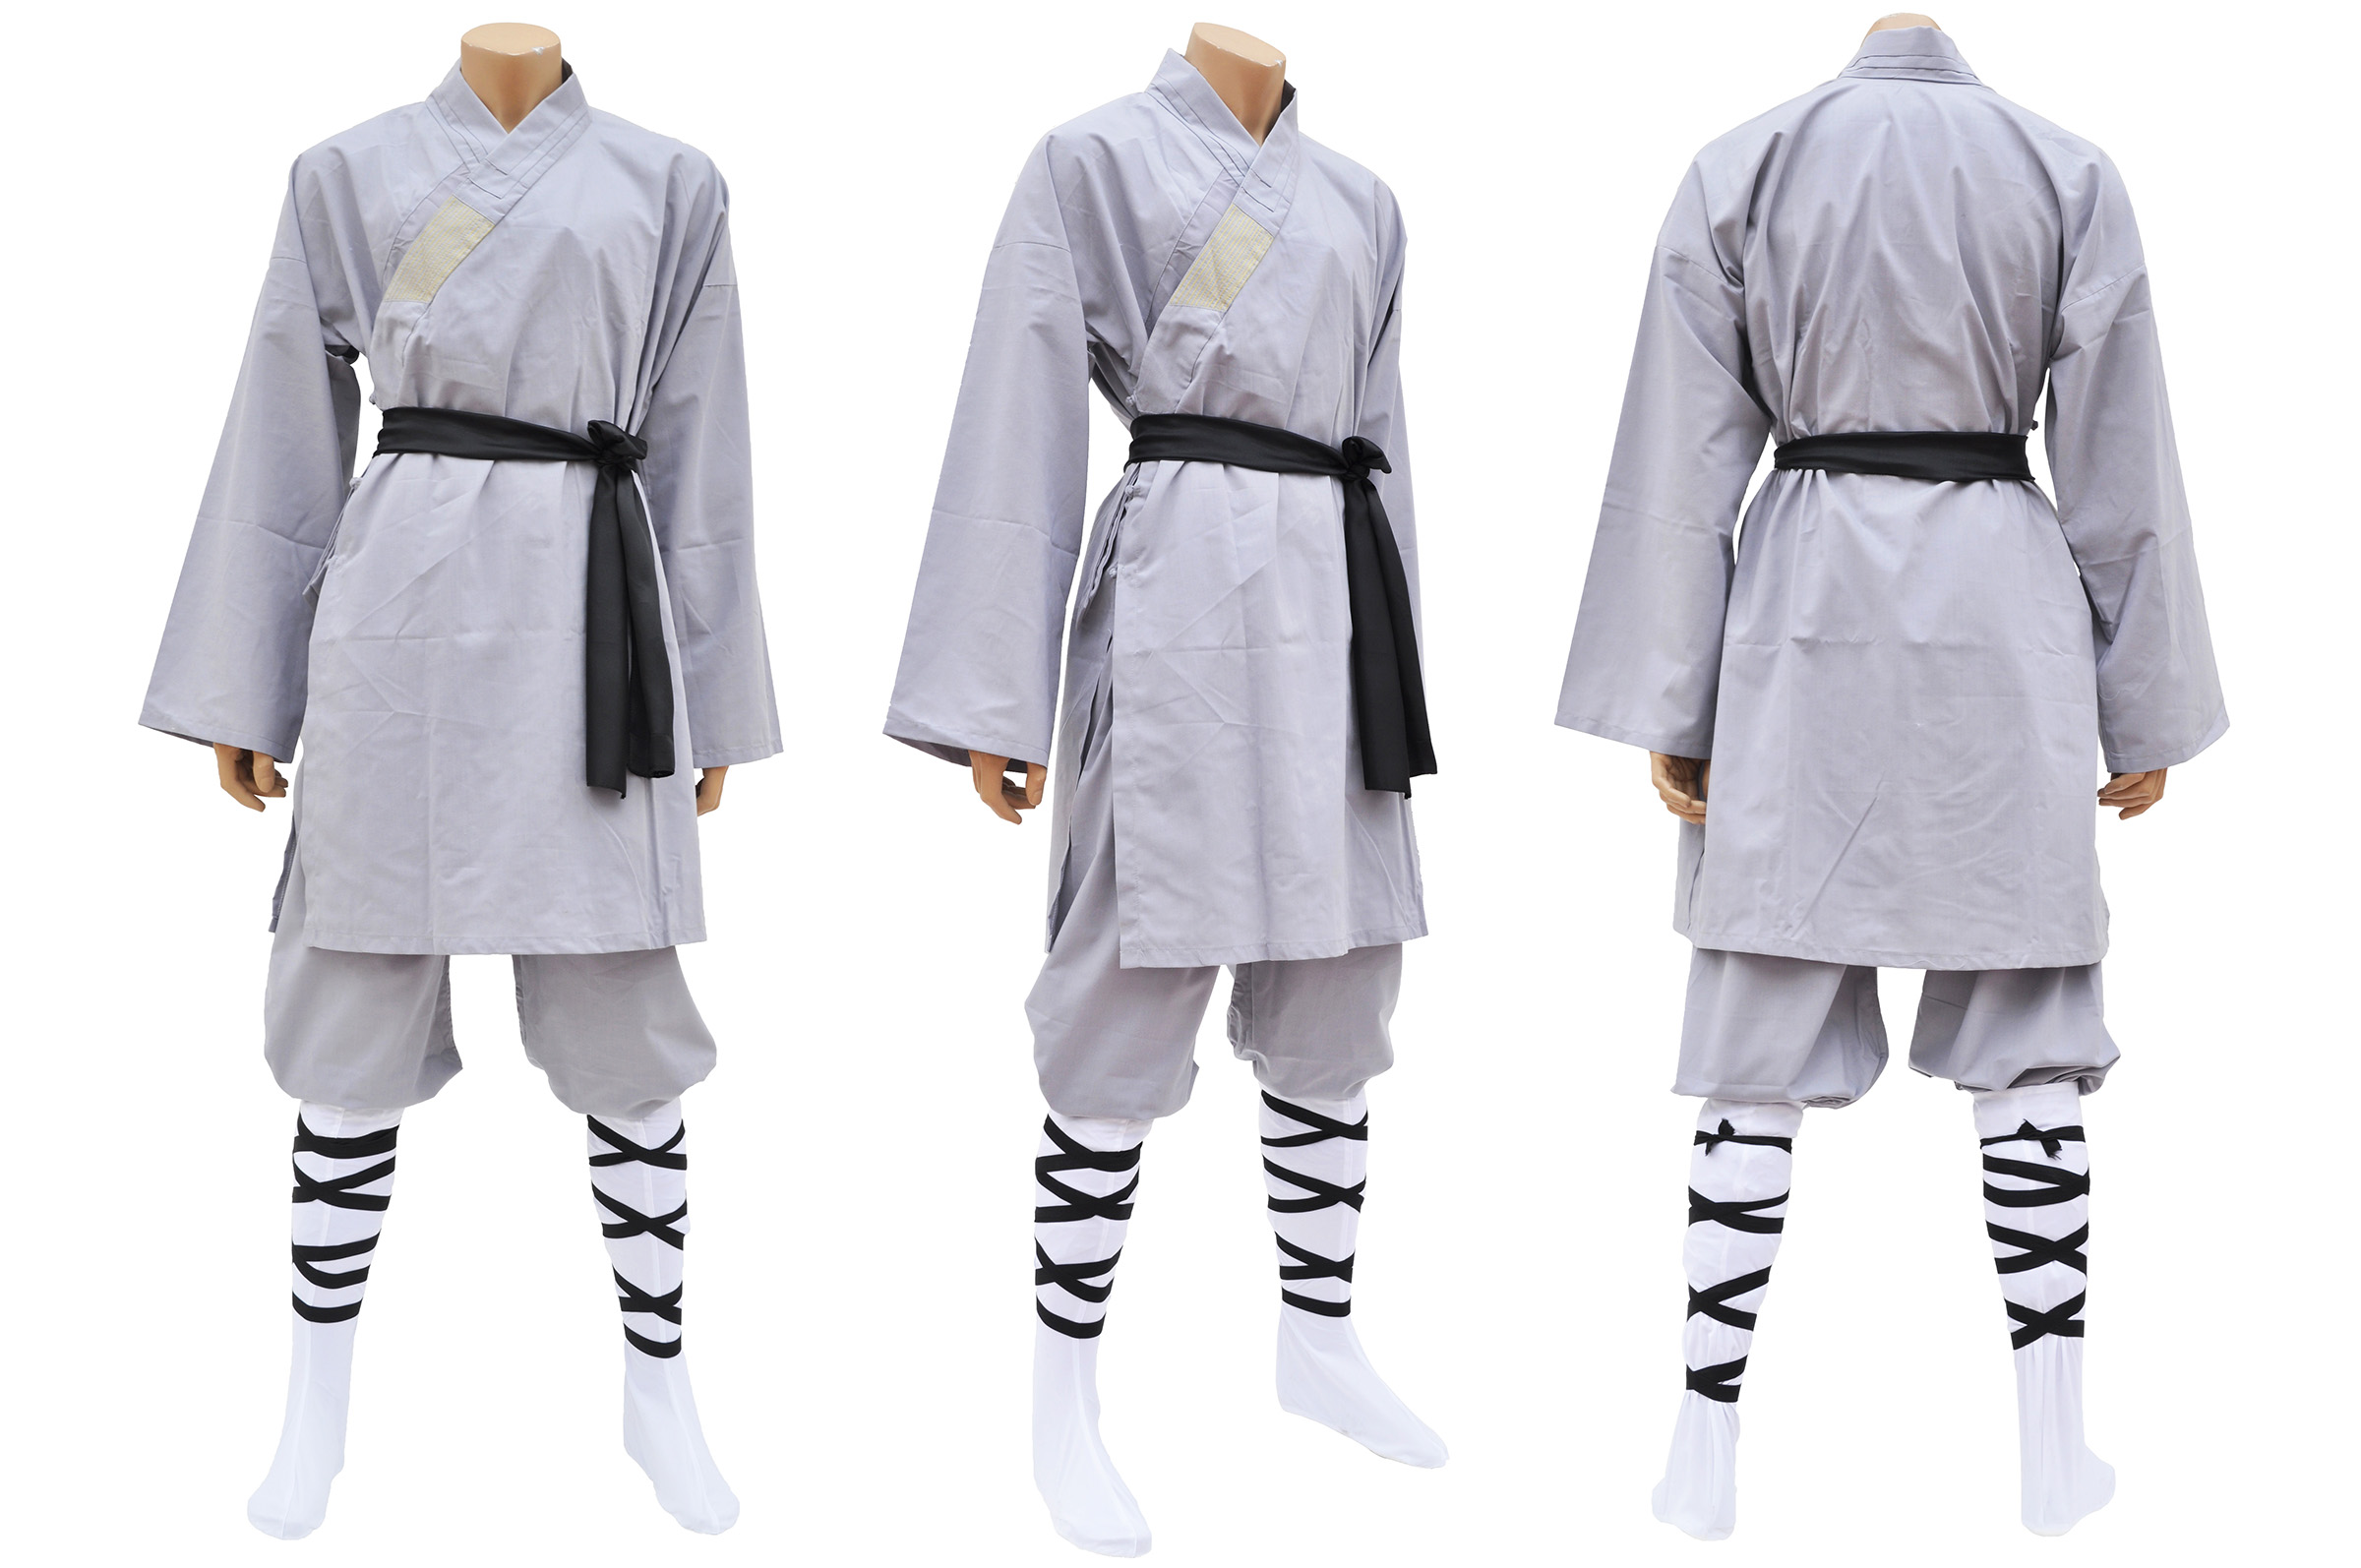 Shaolin Uniform 92